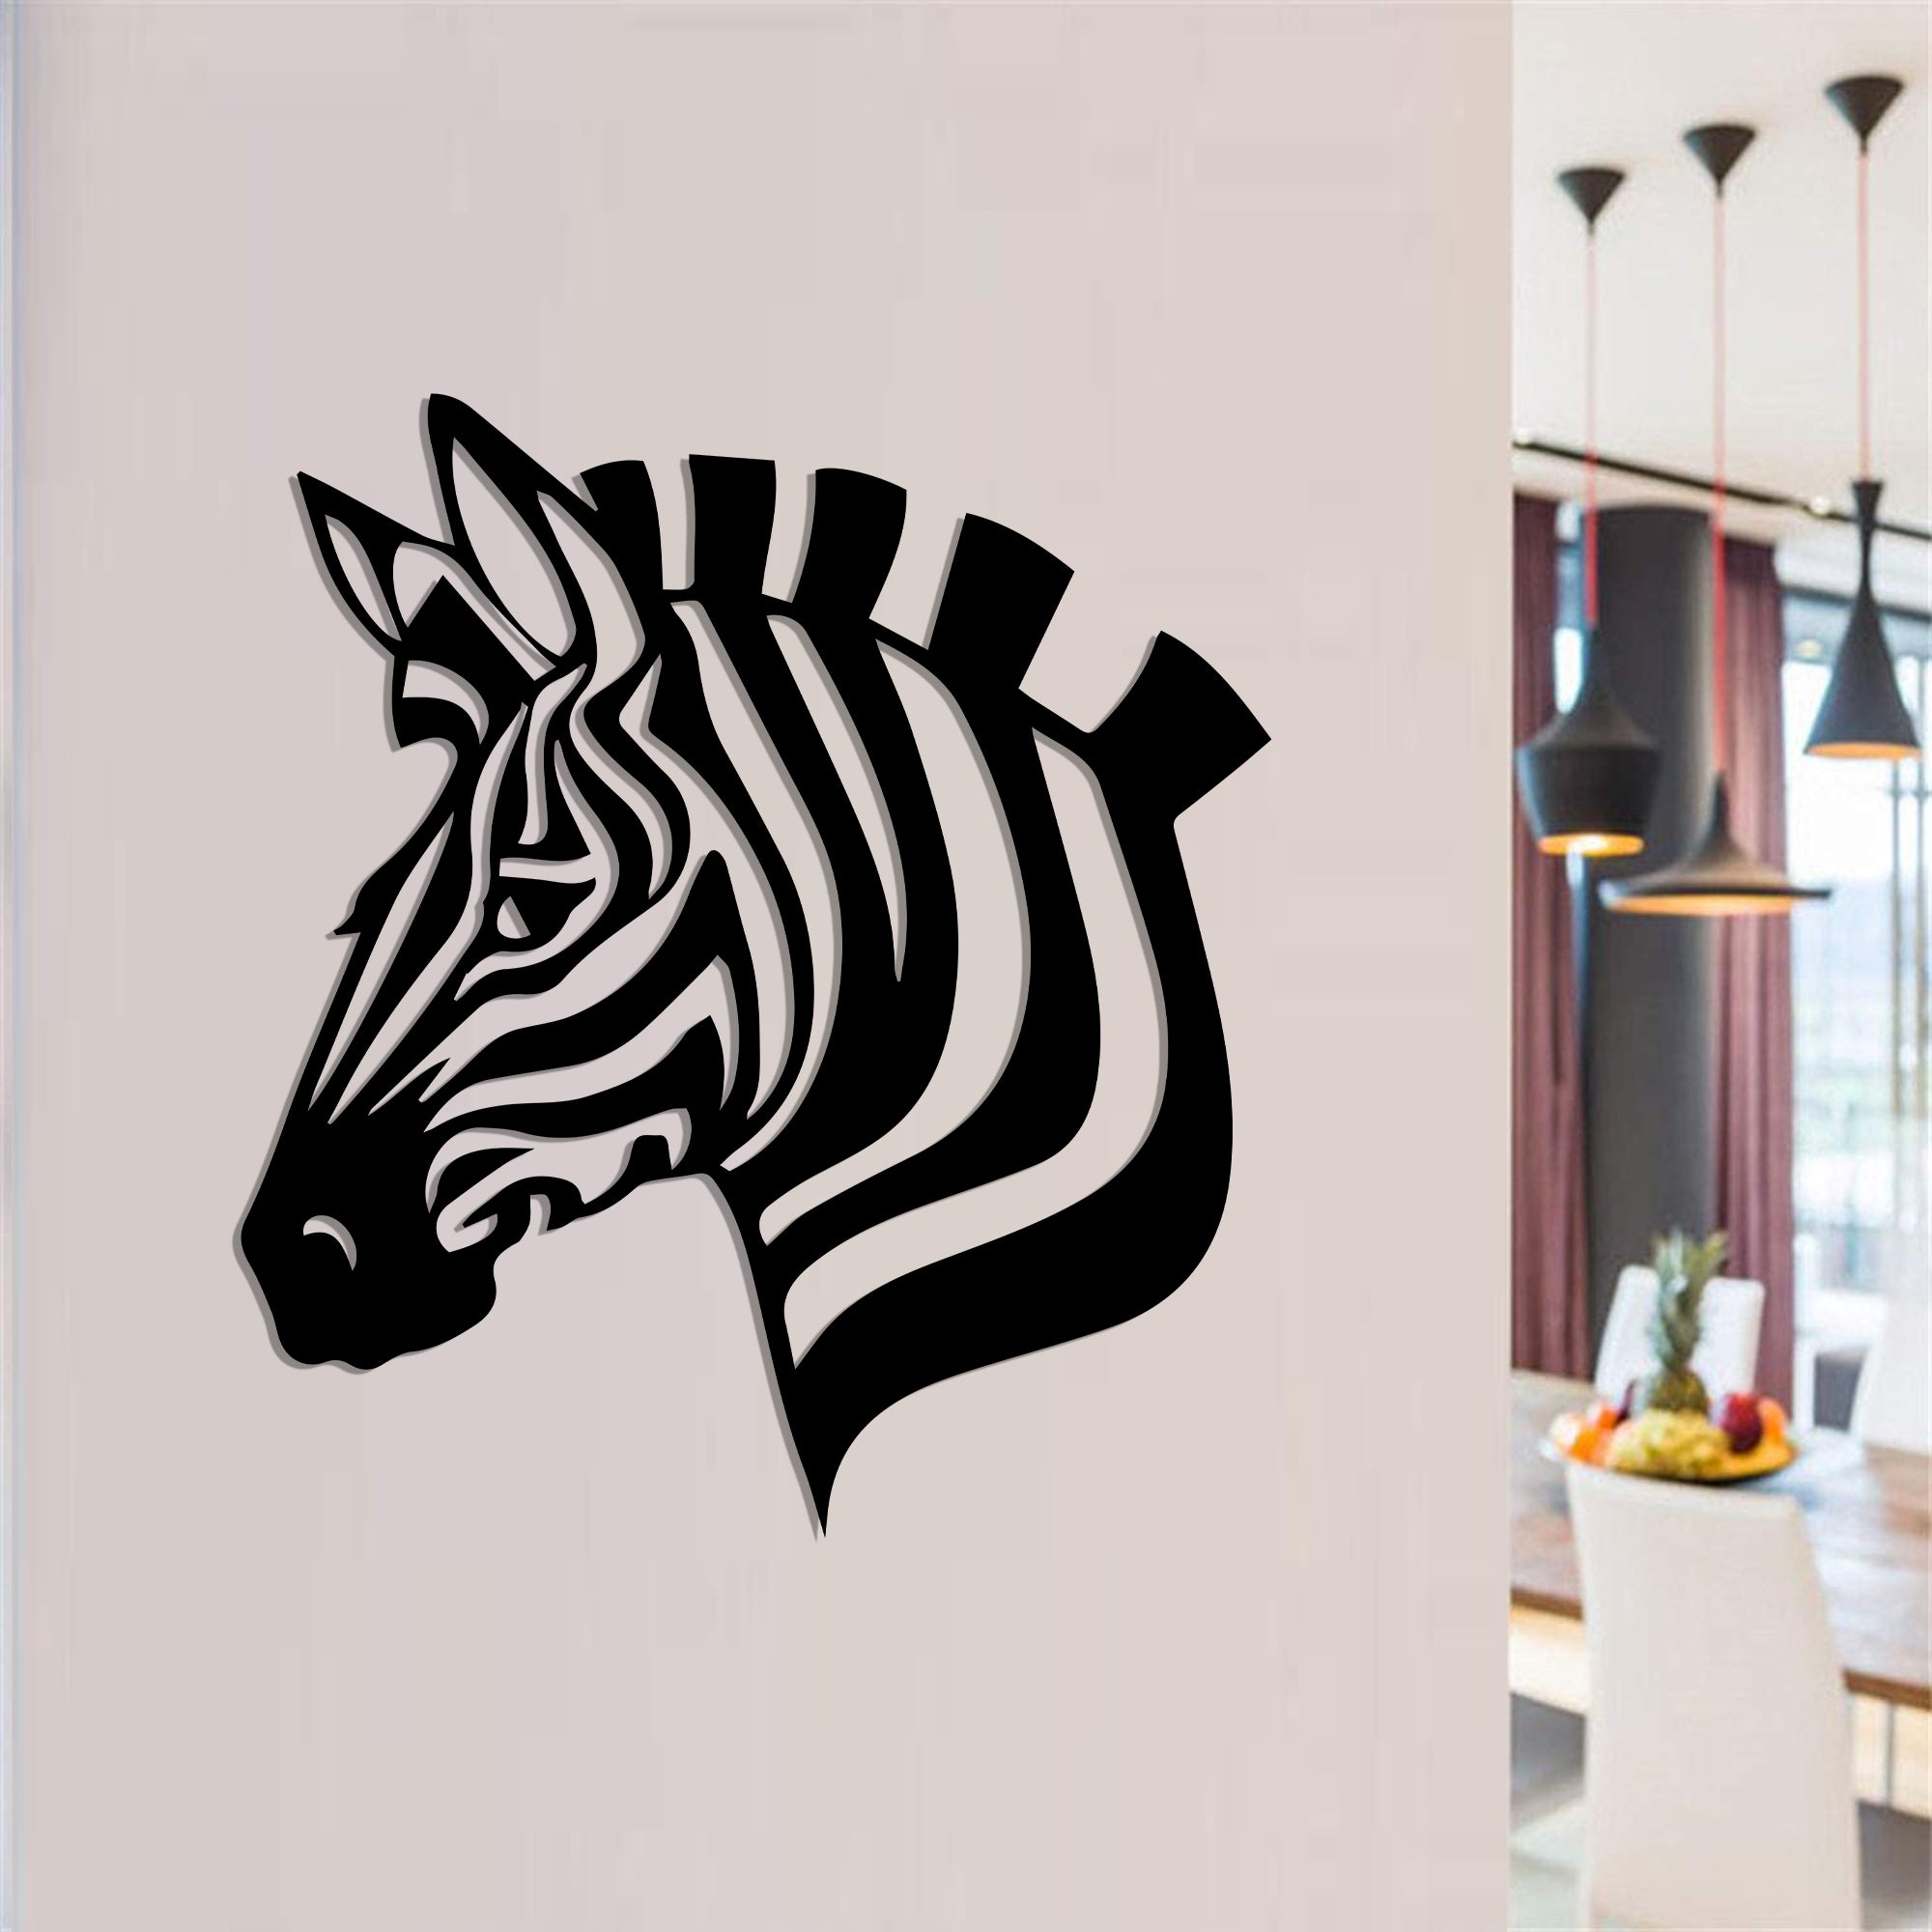 Дерев'яна дизайнерська картина "Zebra" (50 x 45 см)